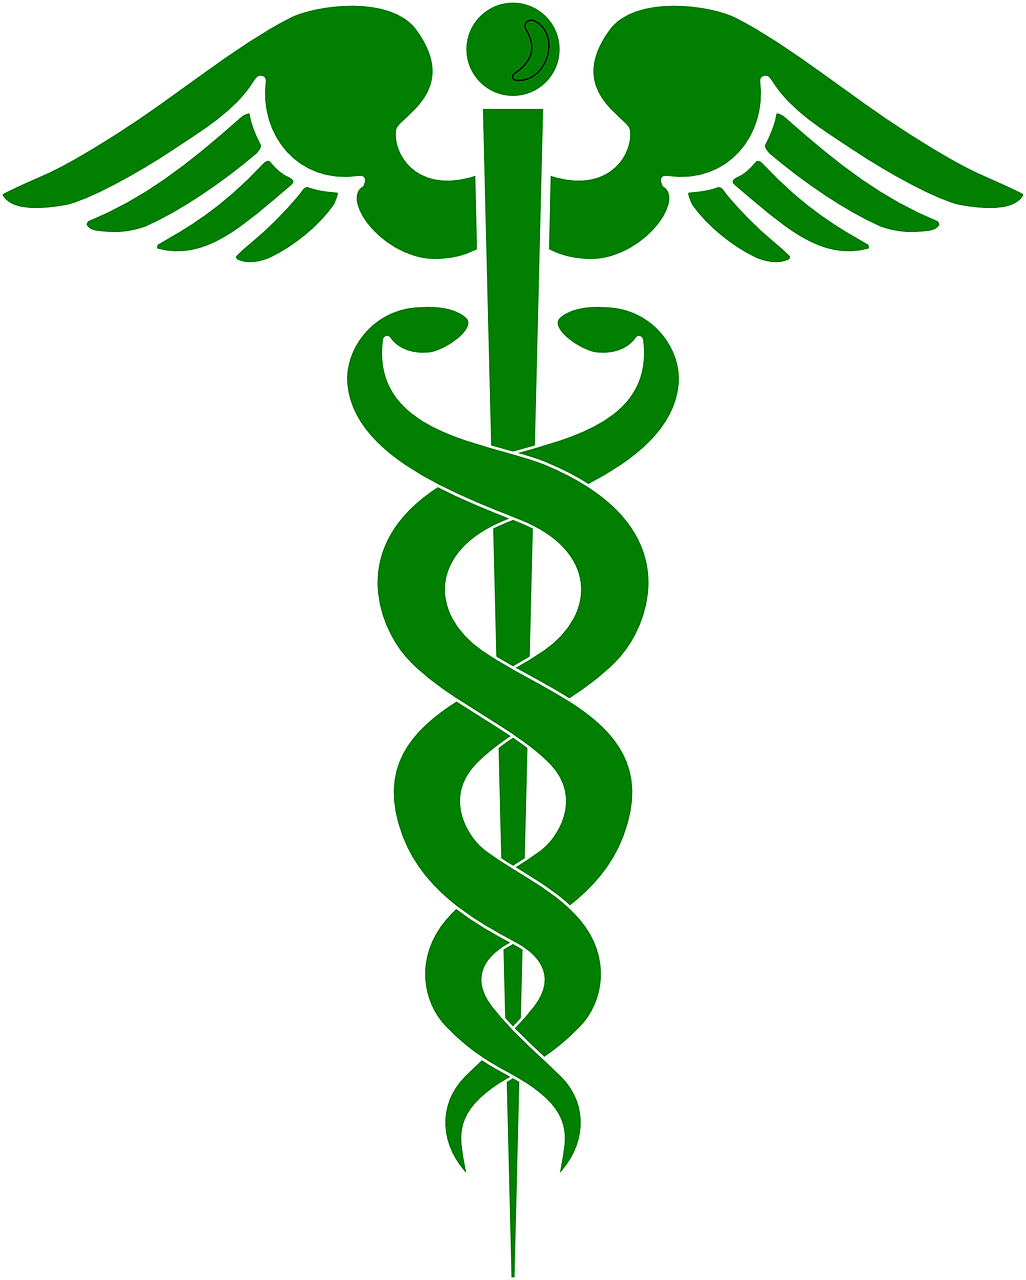 Vaistinė, Gydytojas, Sveikata, Simbolis, Žalias, Gyvatė, Kirminas, Stick, Insignia, Gyvatė